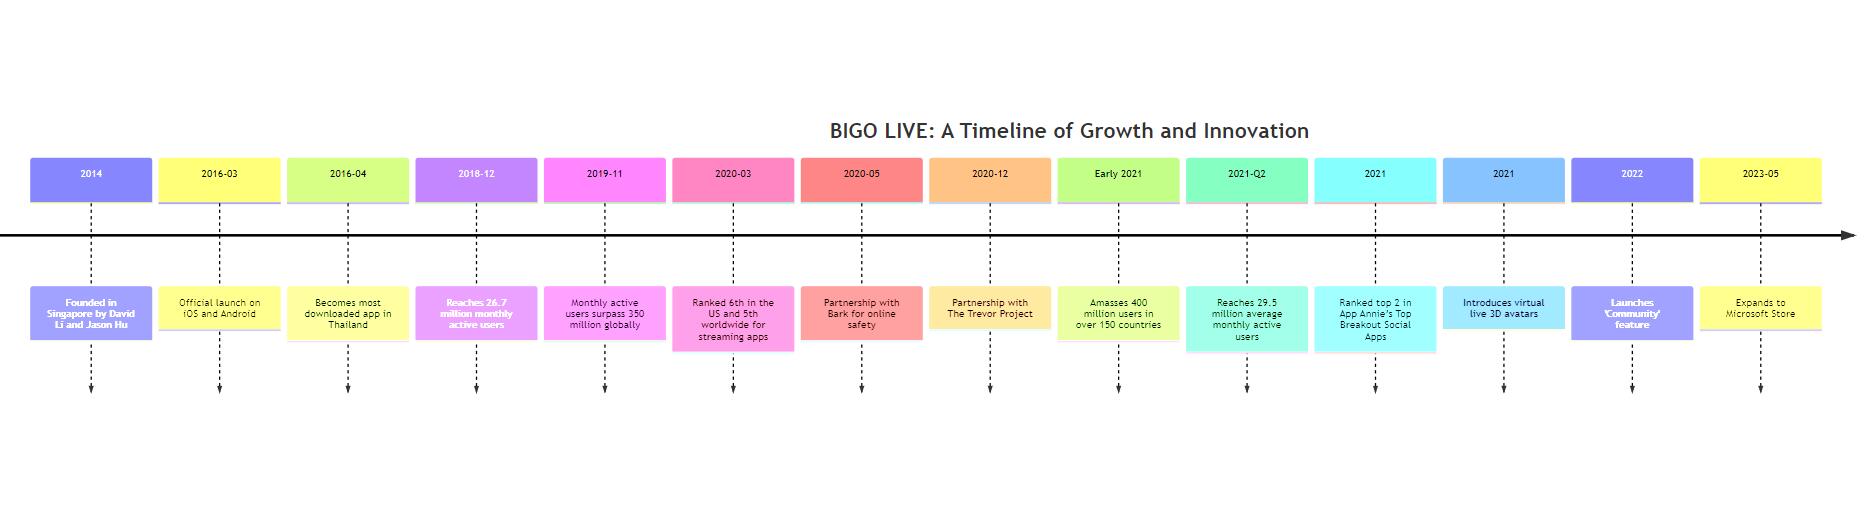 BIGO LIVE Timeline